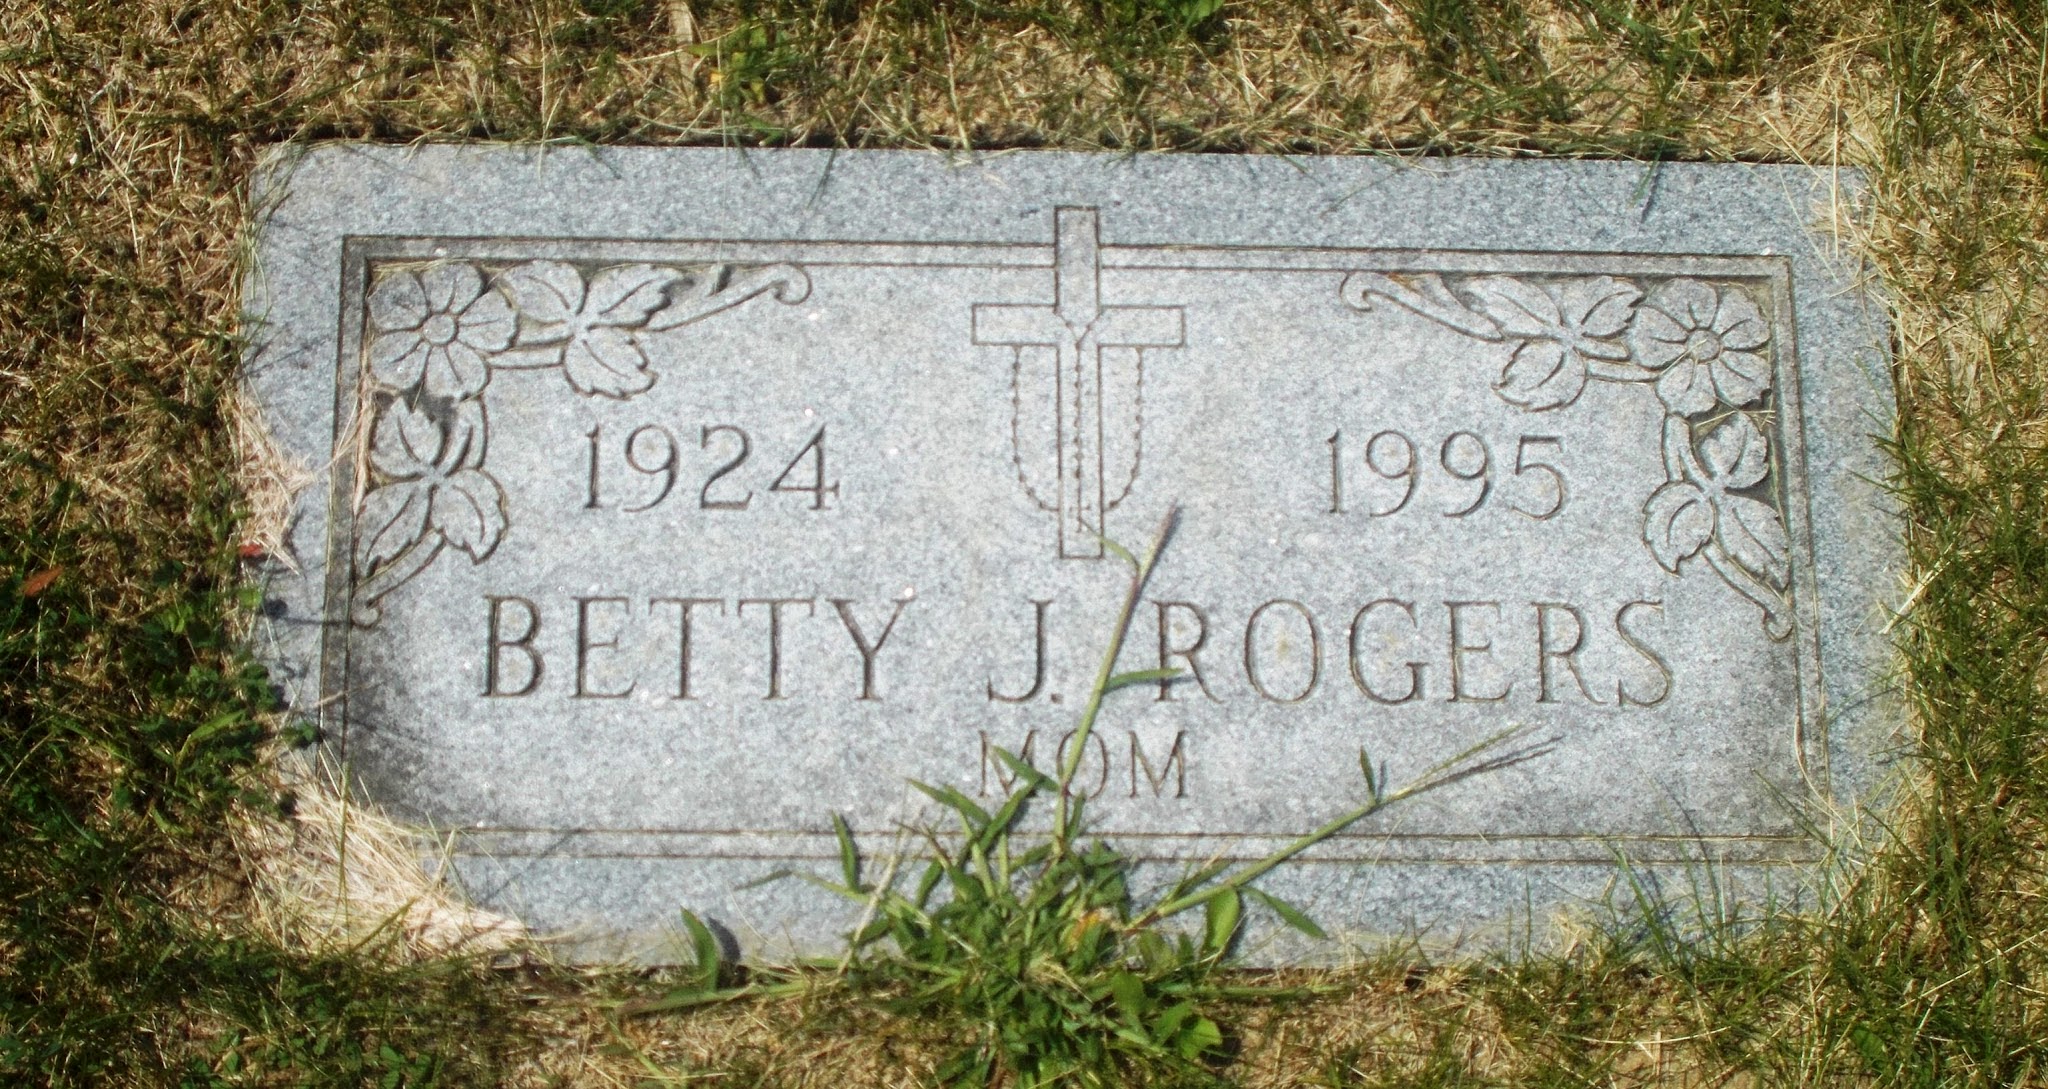 Betty J Bjerk Rogers